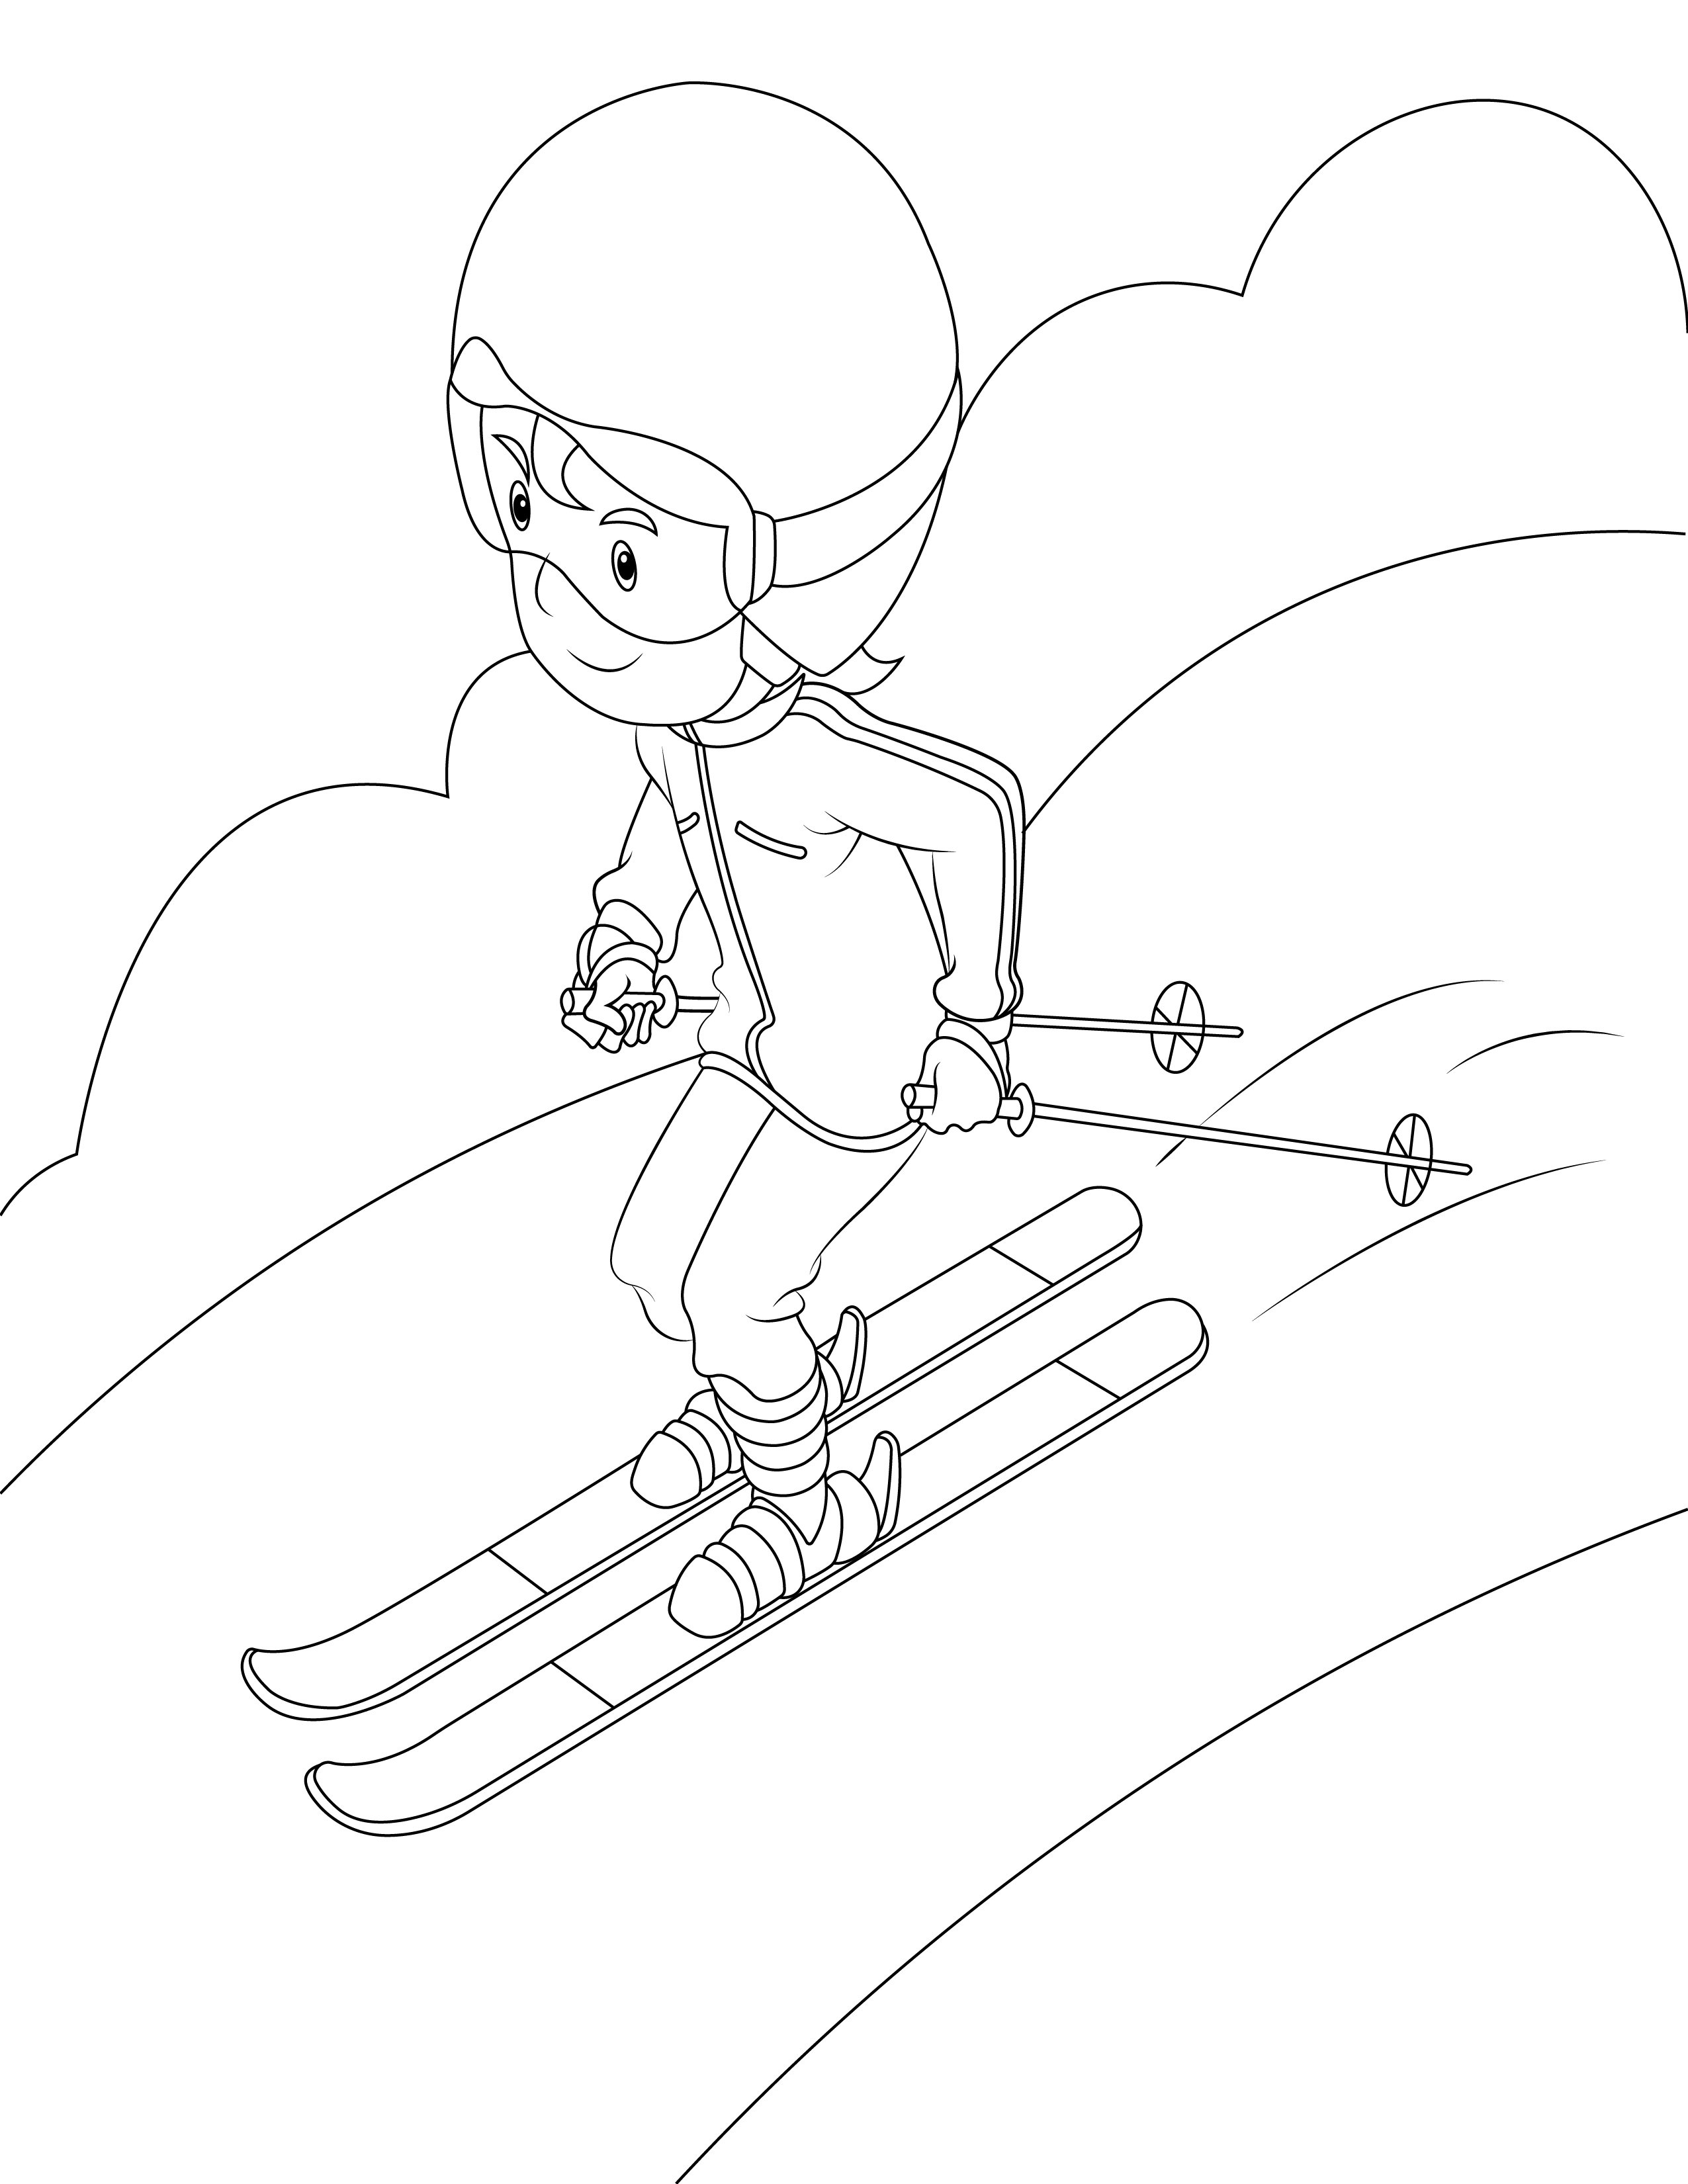 Disegno da colorare di bambino sciatore